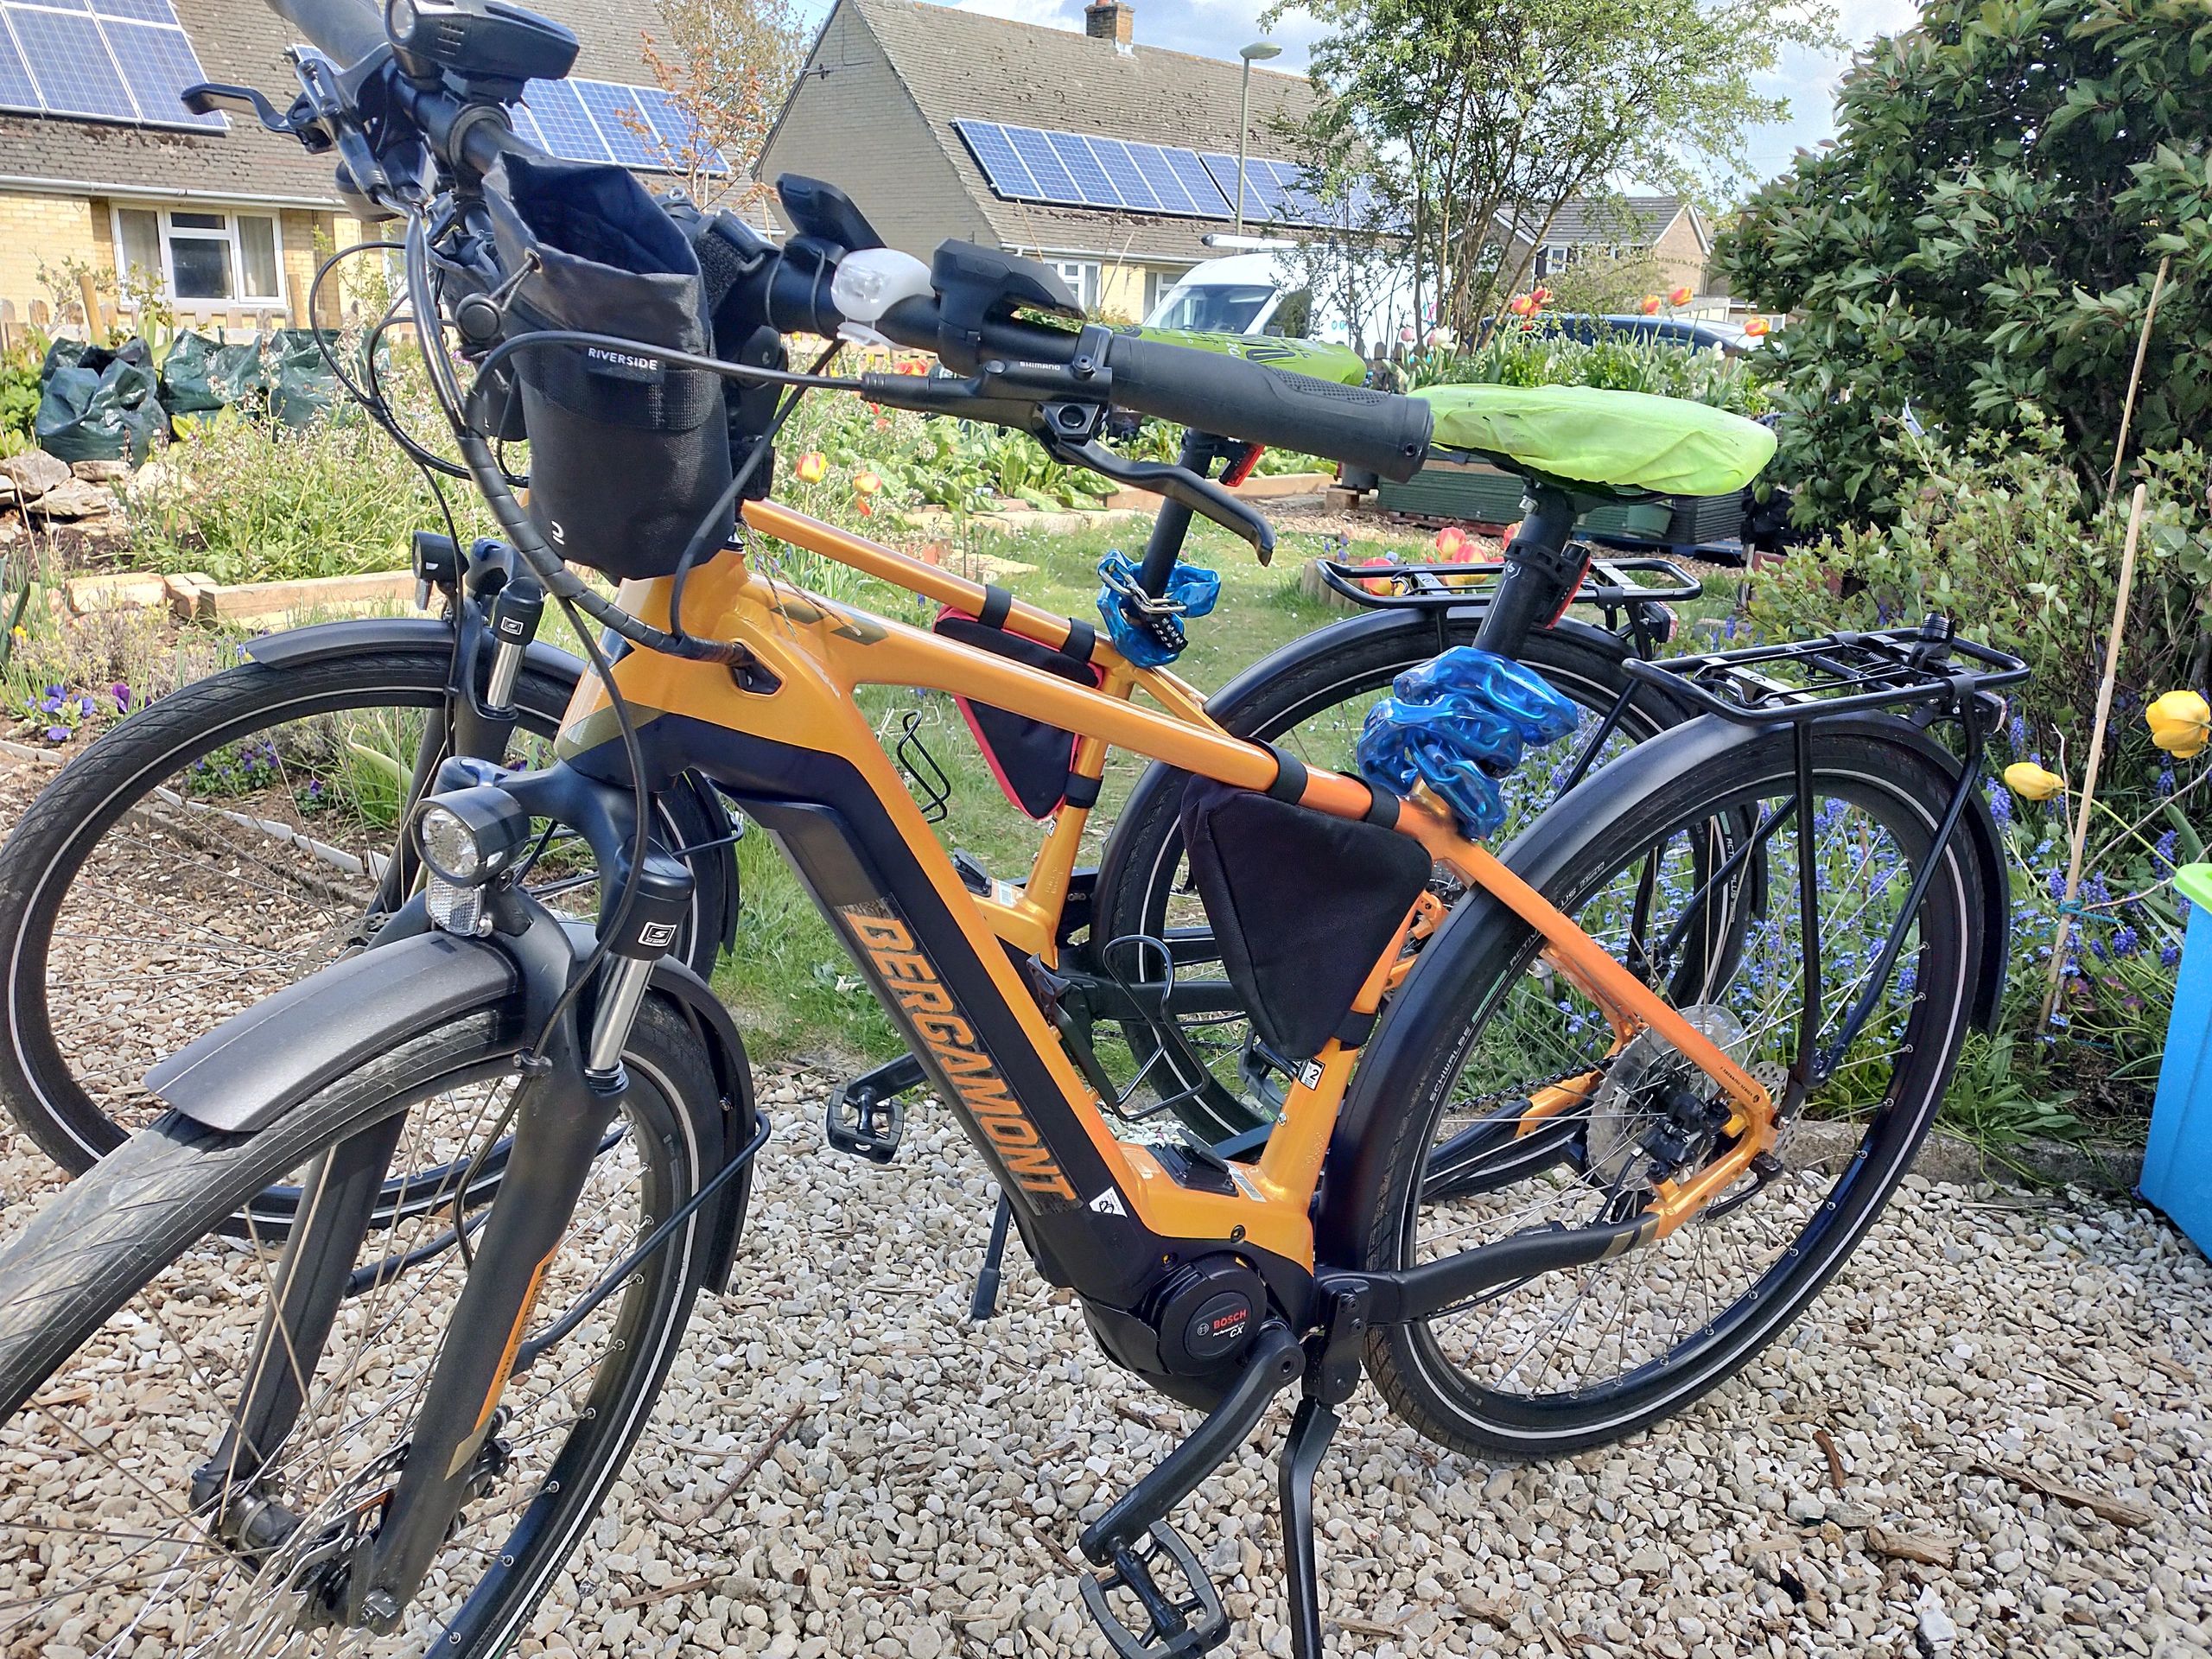 Bergmanont, Trek, Raleigh electric bikes